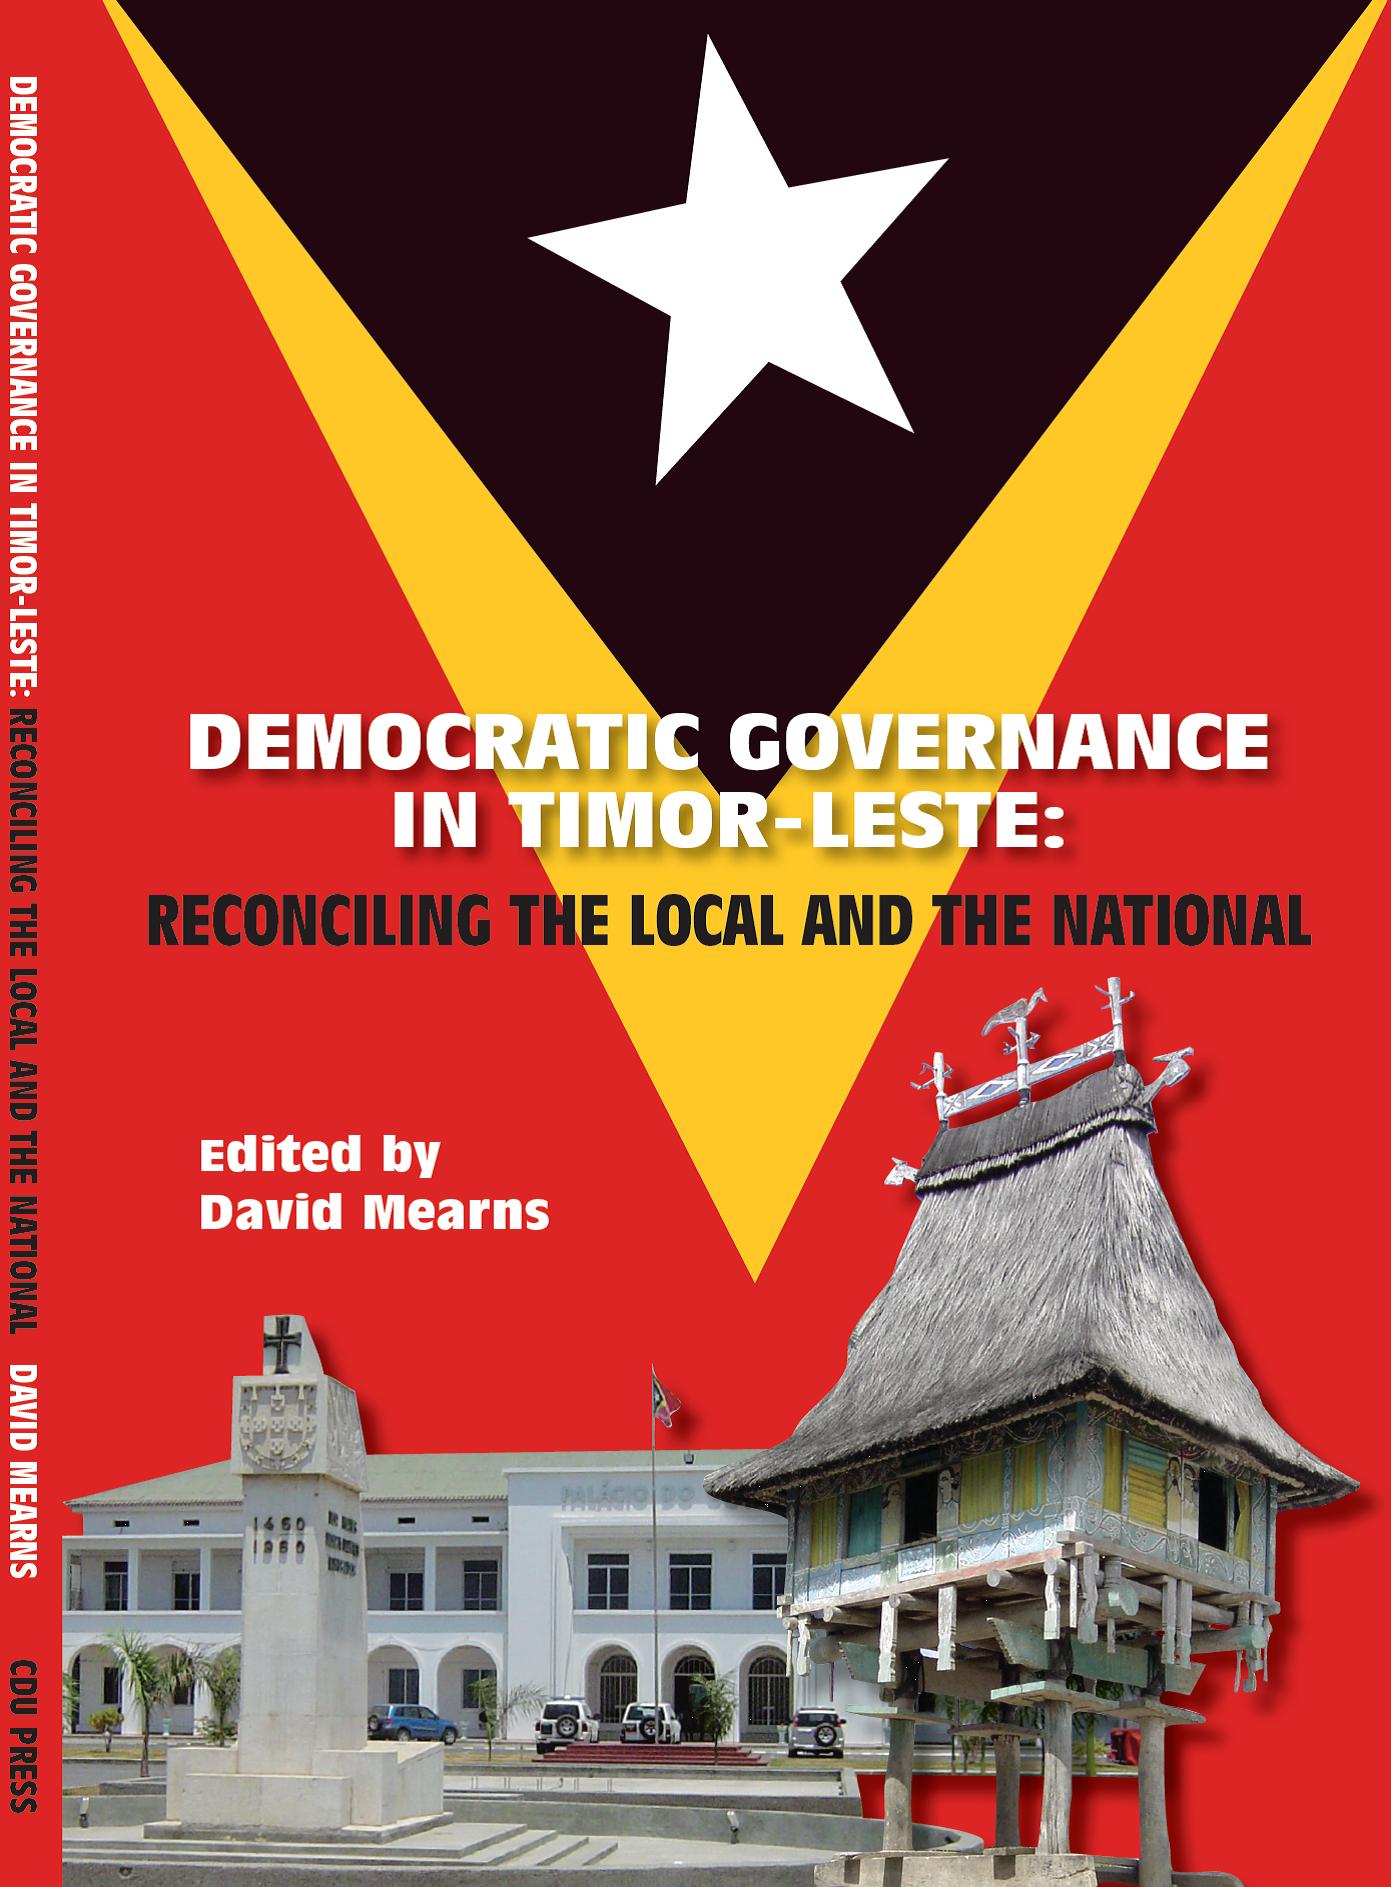 Democratic Governance in Timor-Leste